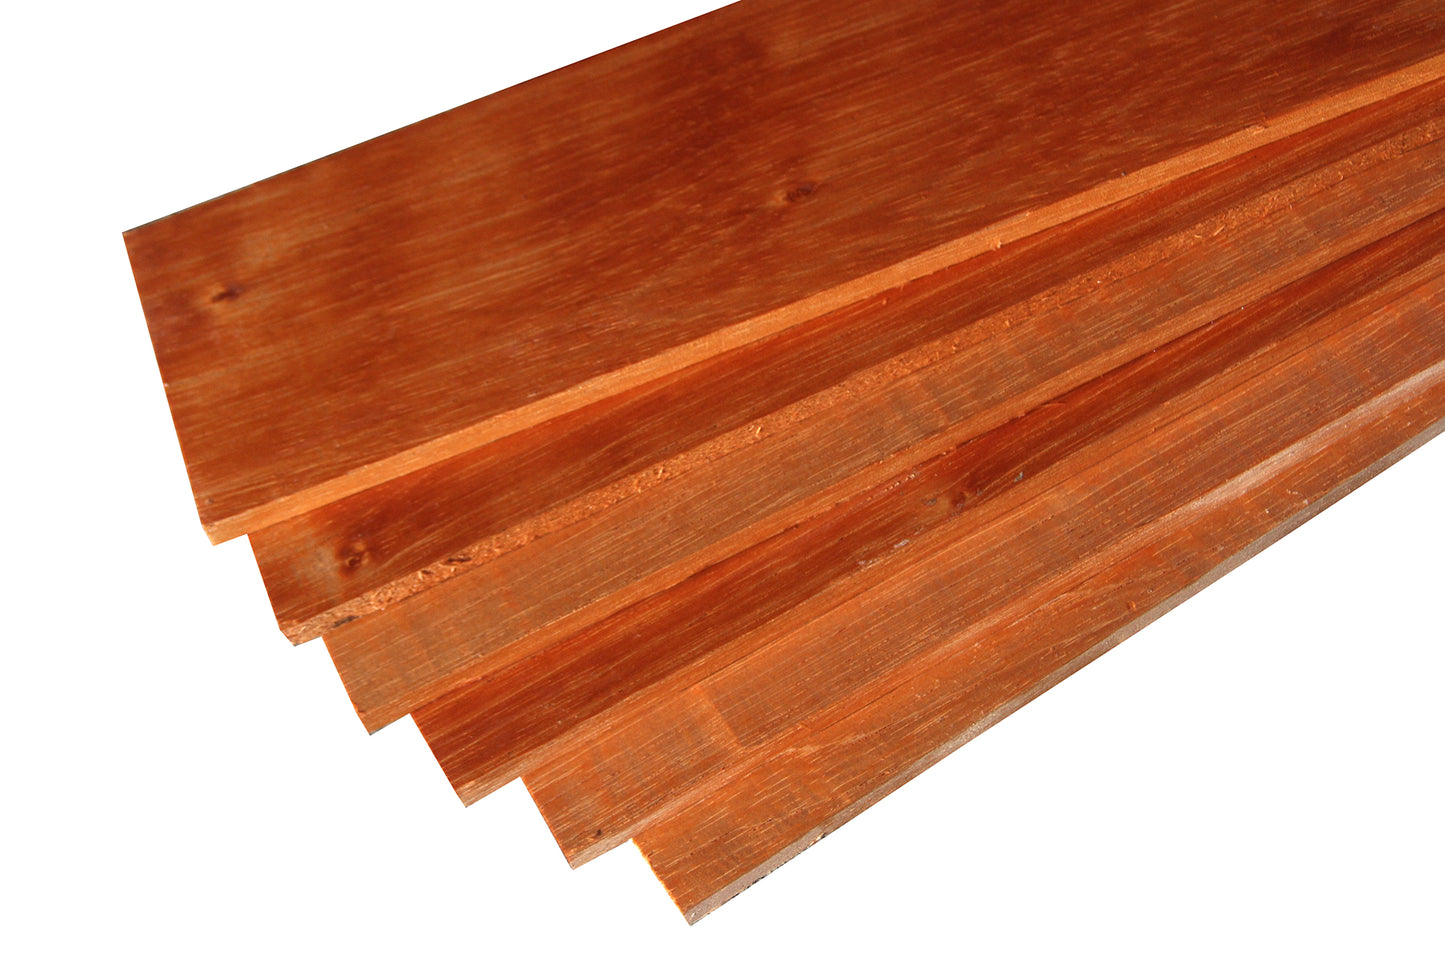 Spanish Cedar Micro Lumber (24" x 4" x 3/8")